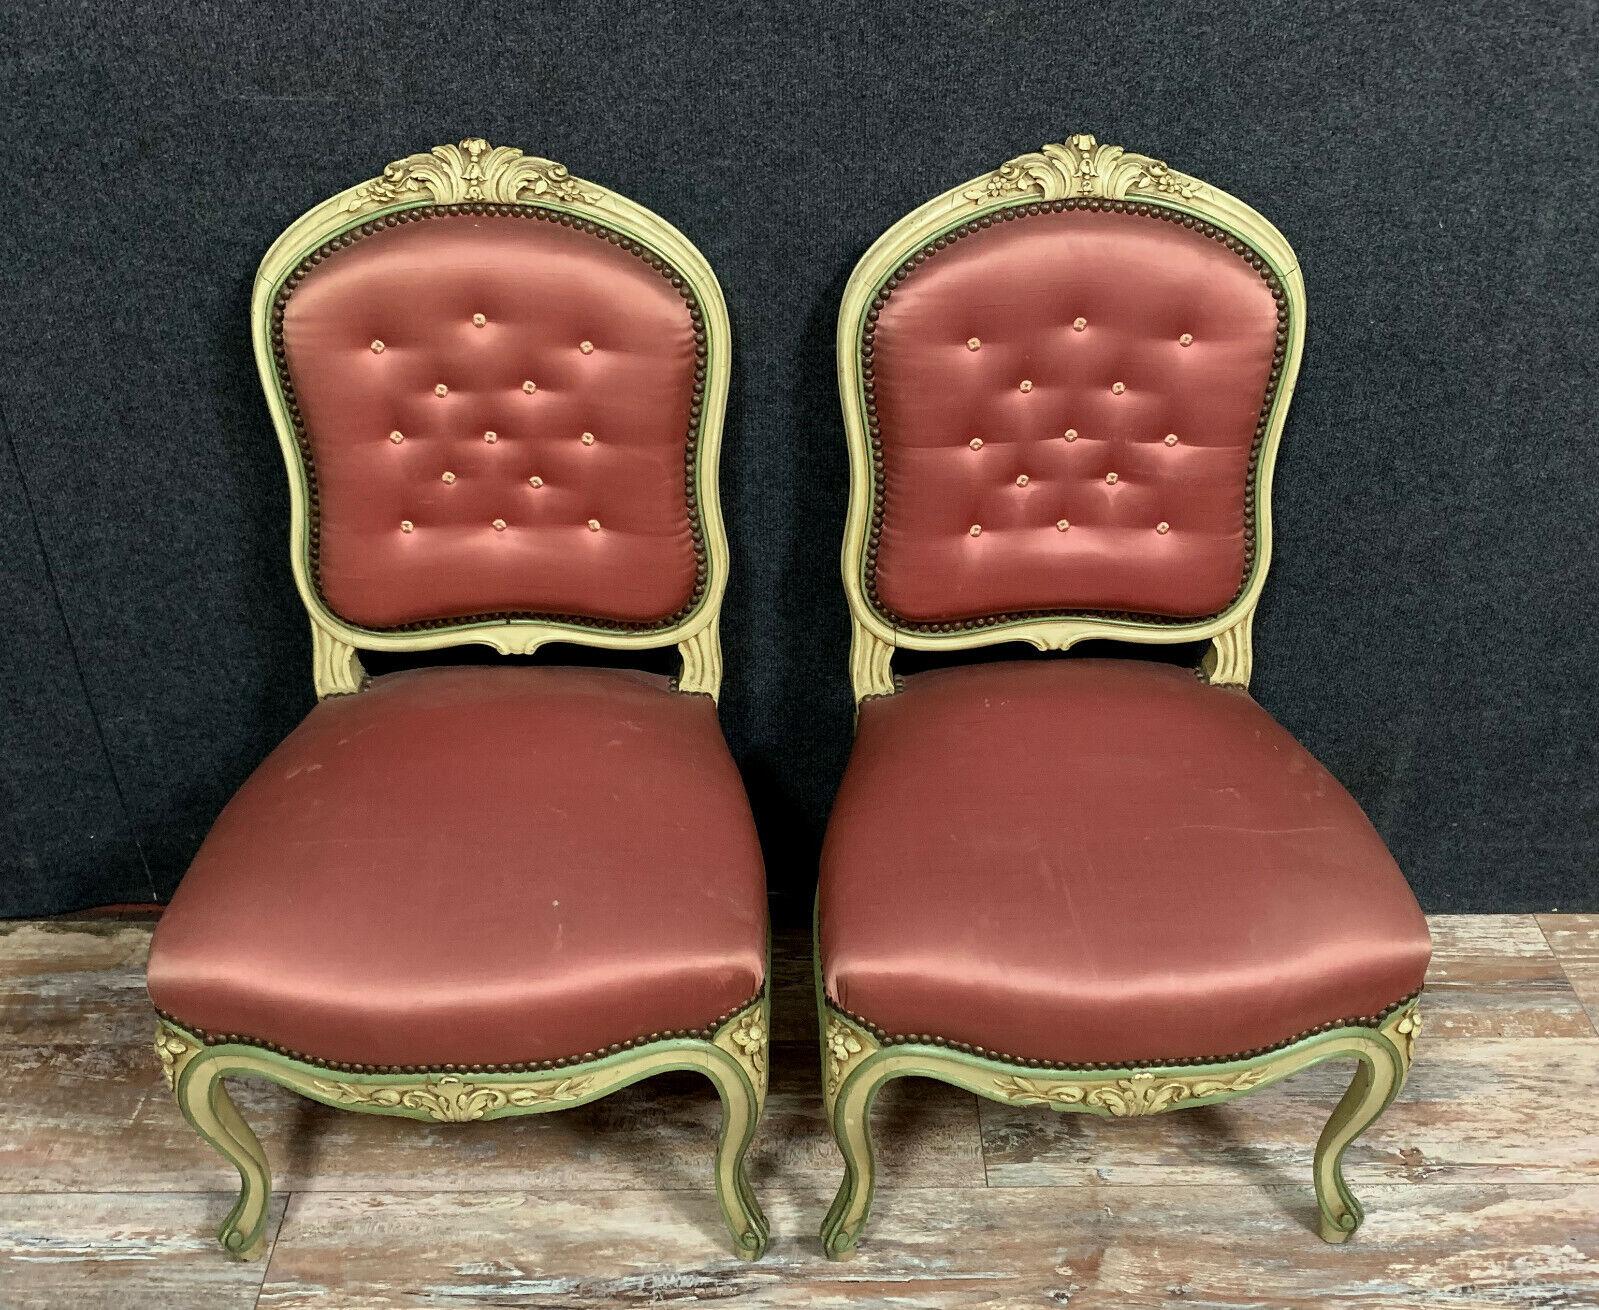 Verschönern Sie Ihren Wohnbereich mit diesem atemberaubenden Louis XV-Salonmöbel-Set aus lackiertem Holz. Das Set besteht aus vier eleganten Sesseln und zwei Stühlen, die alle mit einem seidenähnlichen Wandteppich bezogen sind und einen Hauch von